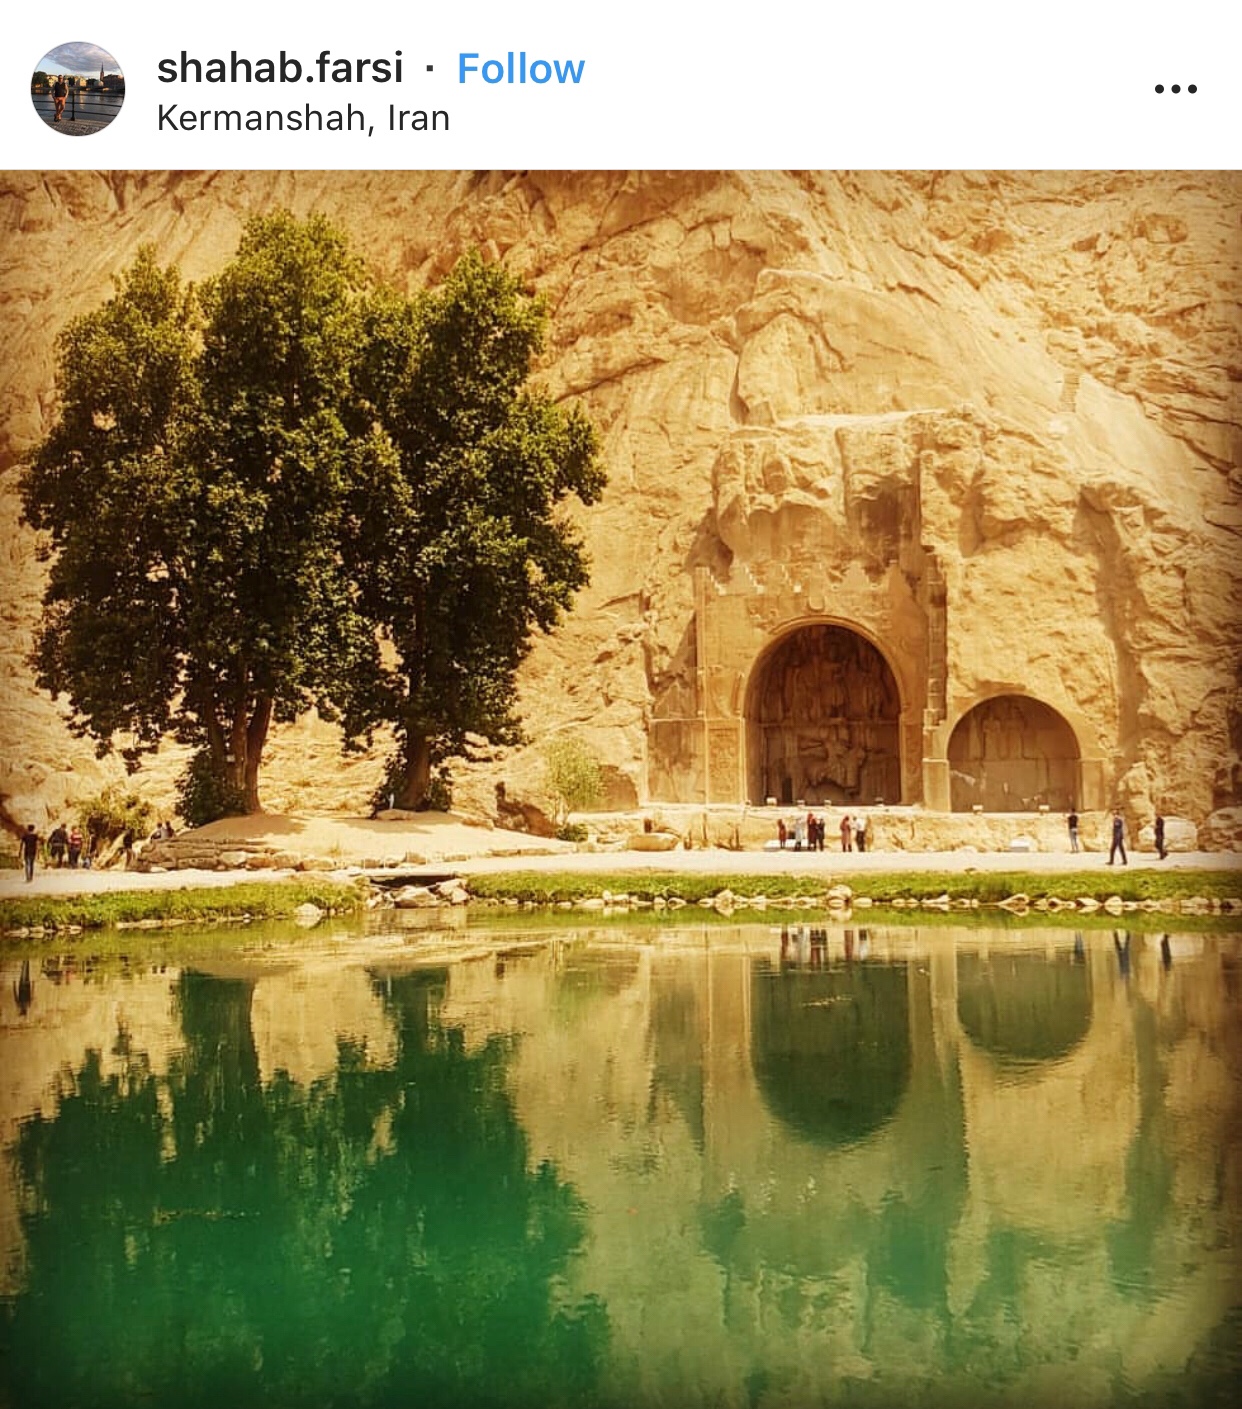 عدسة إيرانية: طاق بستان في كرمانشاه 3